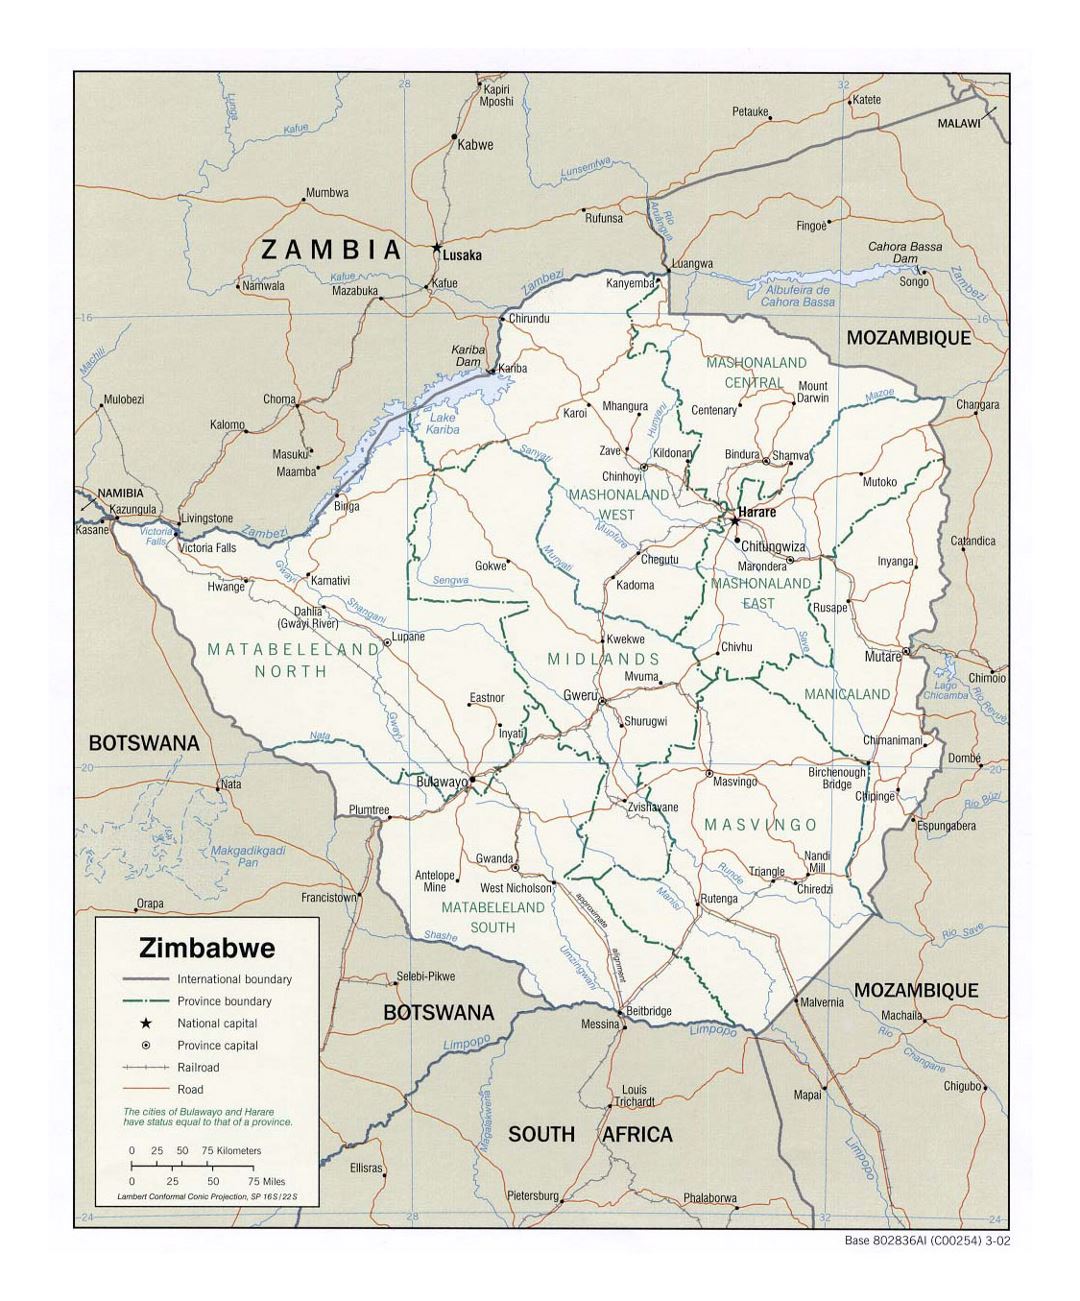 Детальная политическая и административная карта Зимбабве с дорогами, железными дорогами и крупными городами - 2002